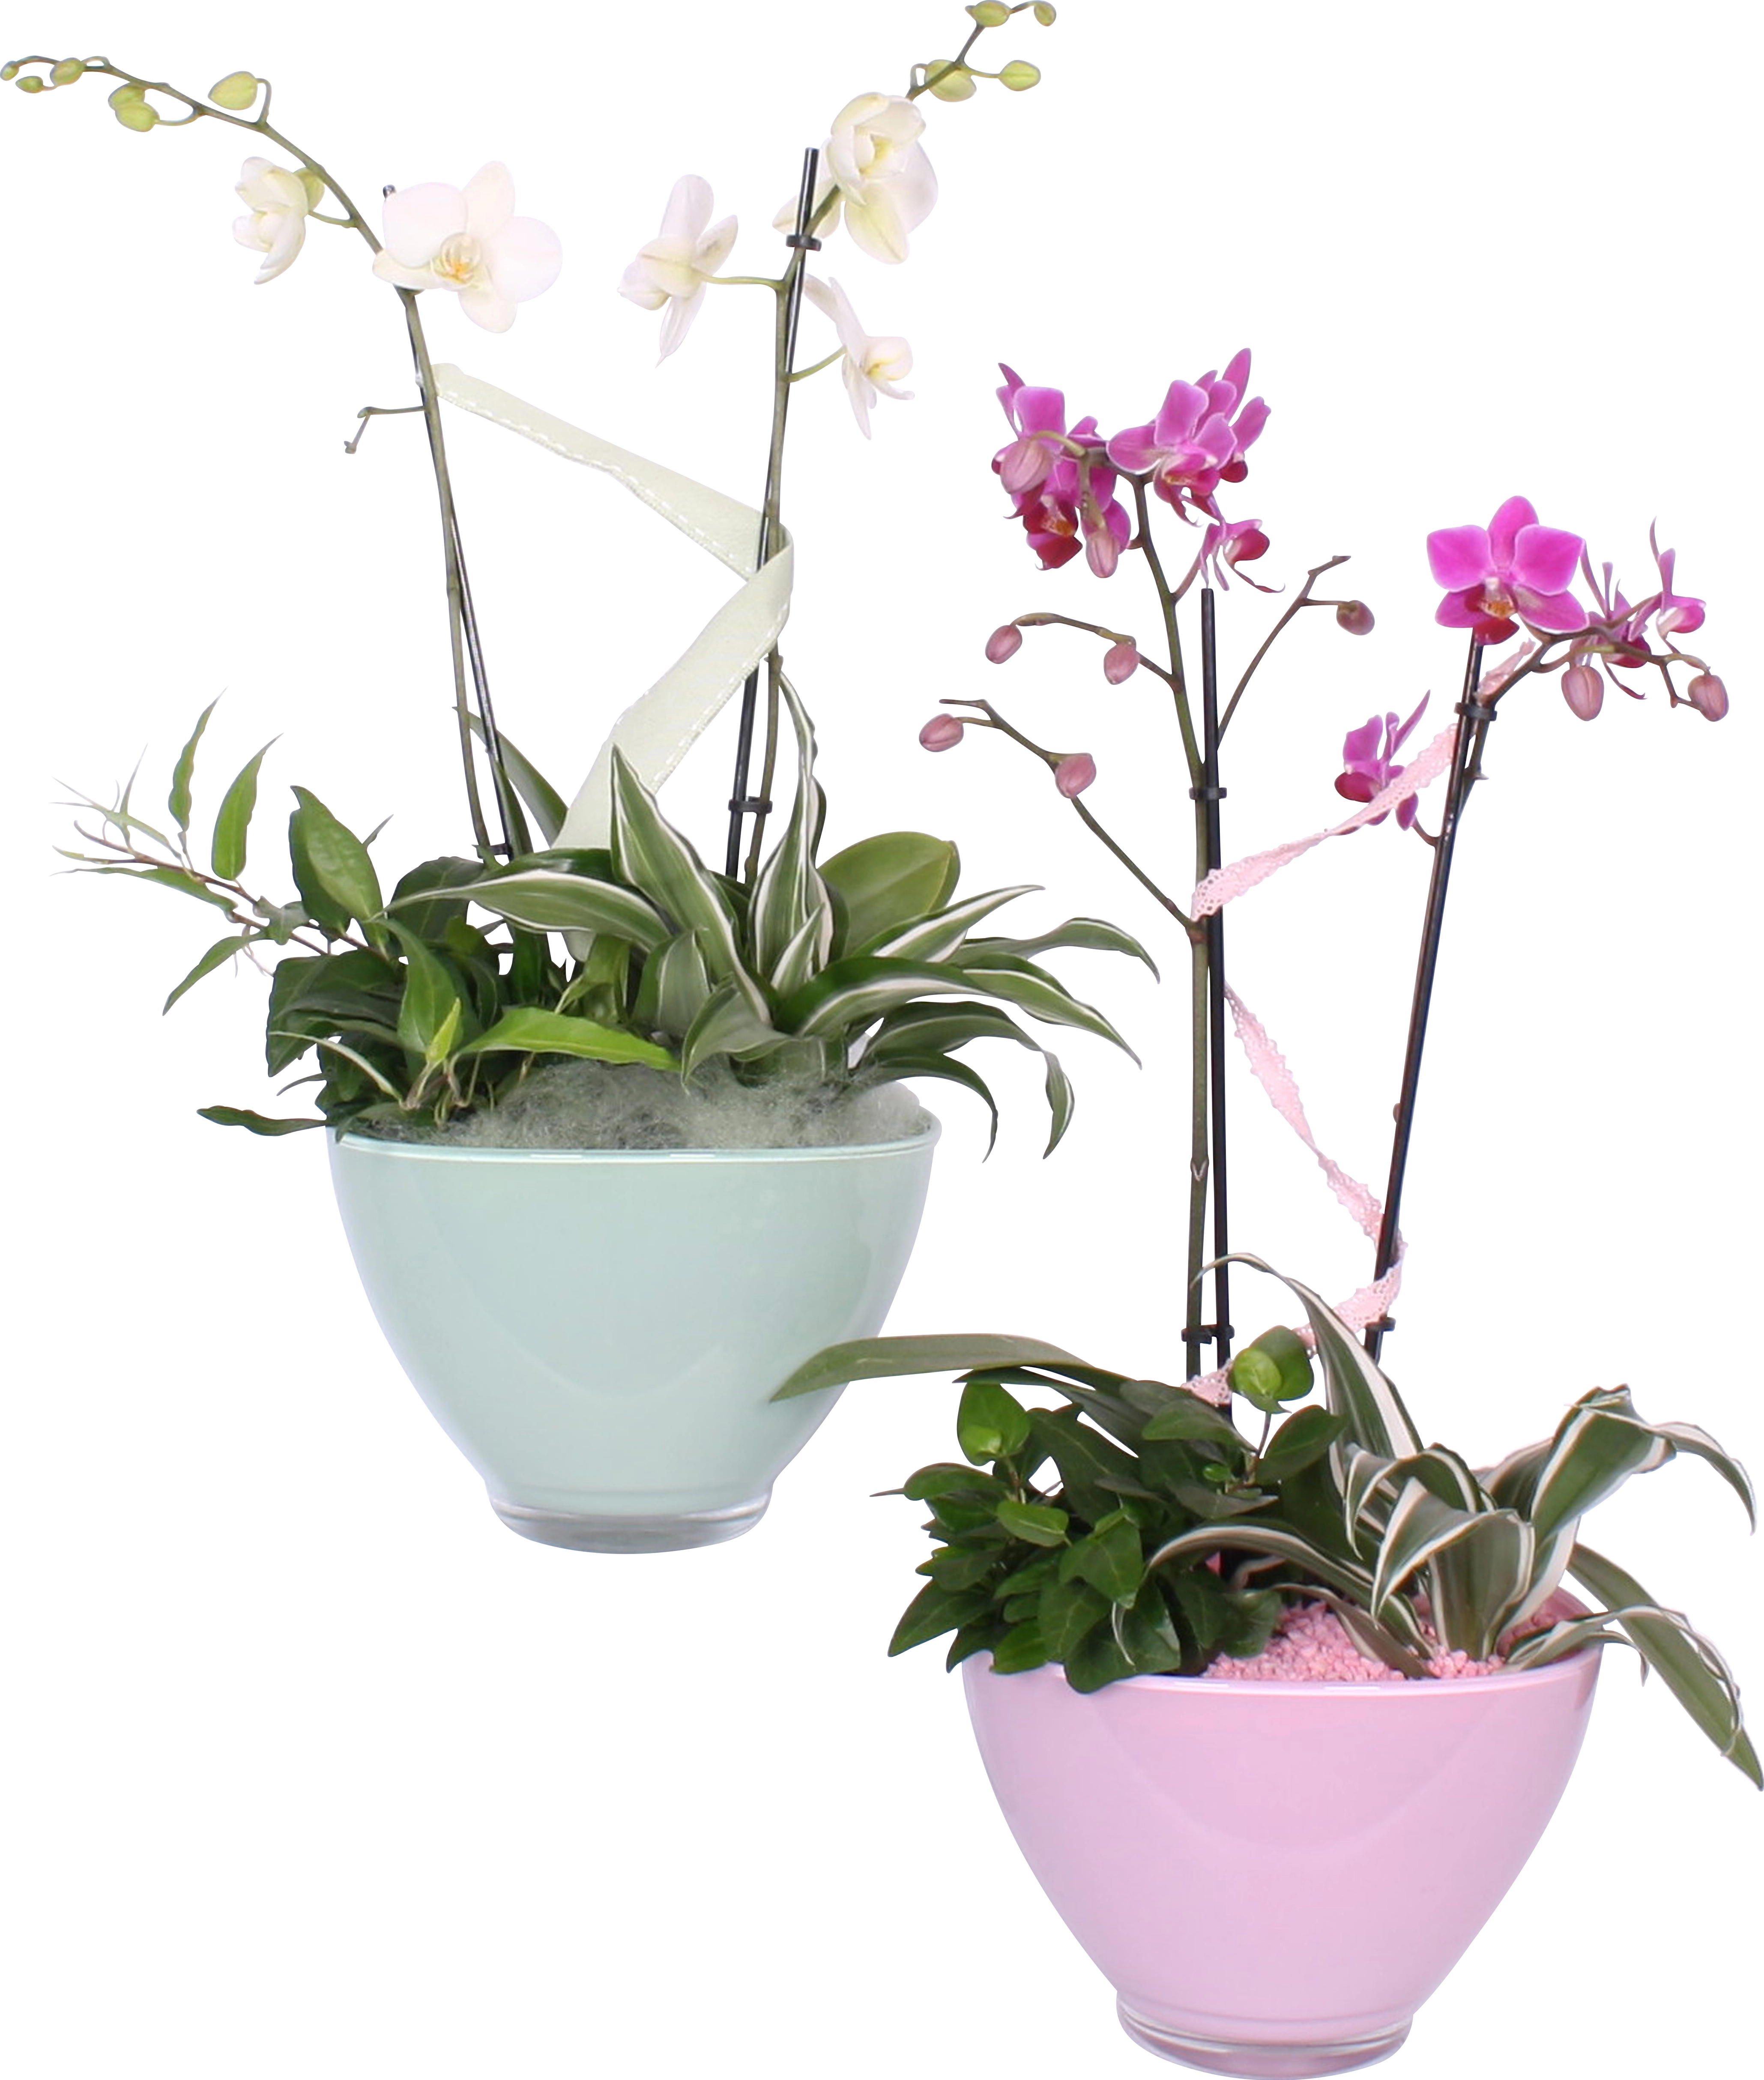 Bepflanzte Glasschale kaufen in verschiedenen Orchidee OBI bei Farben mit